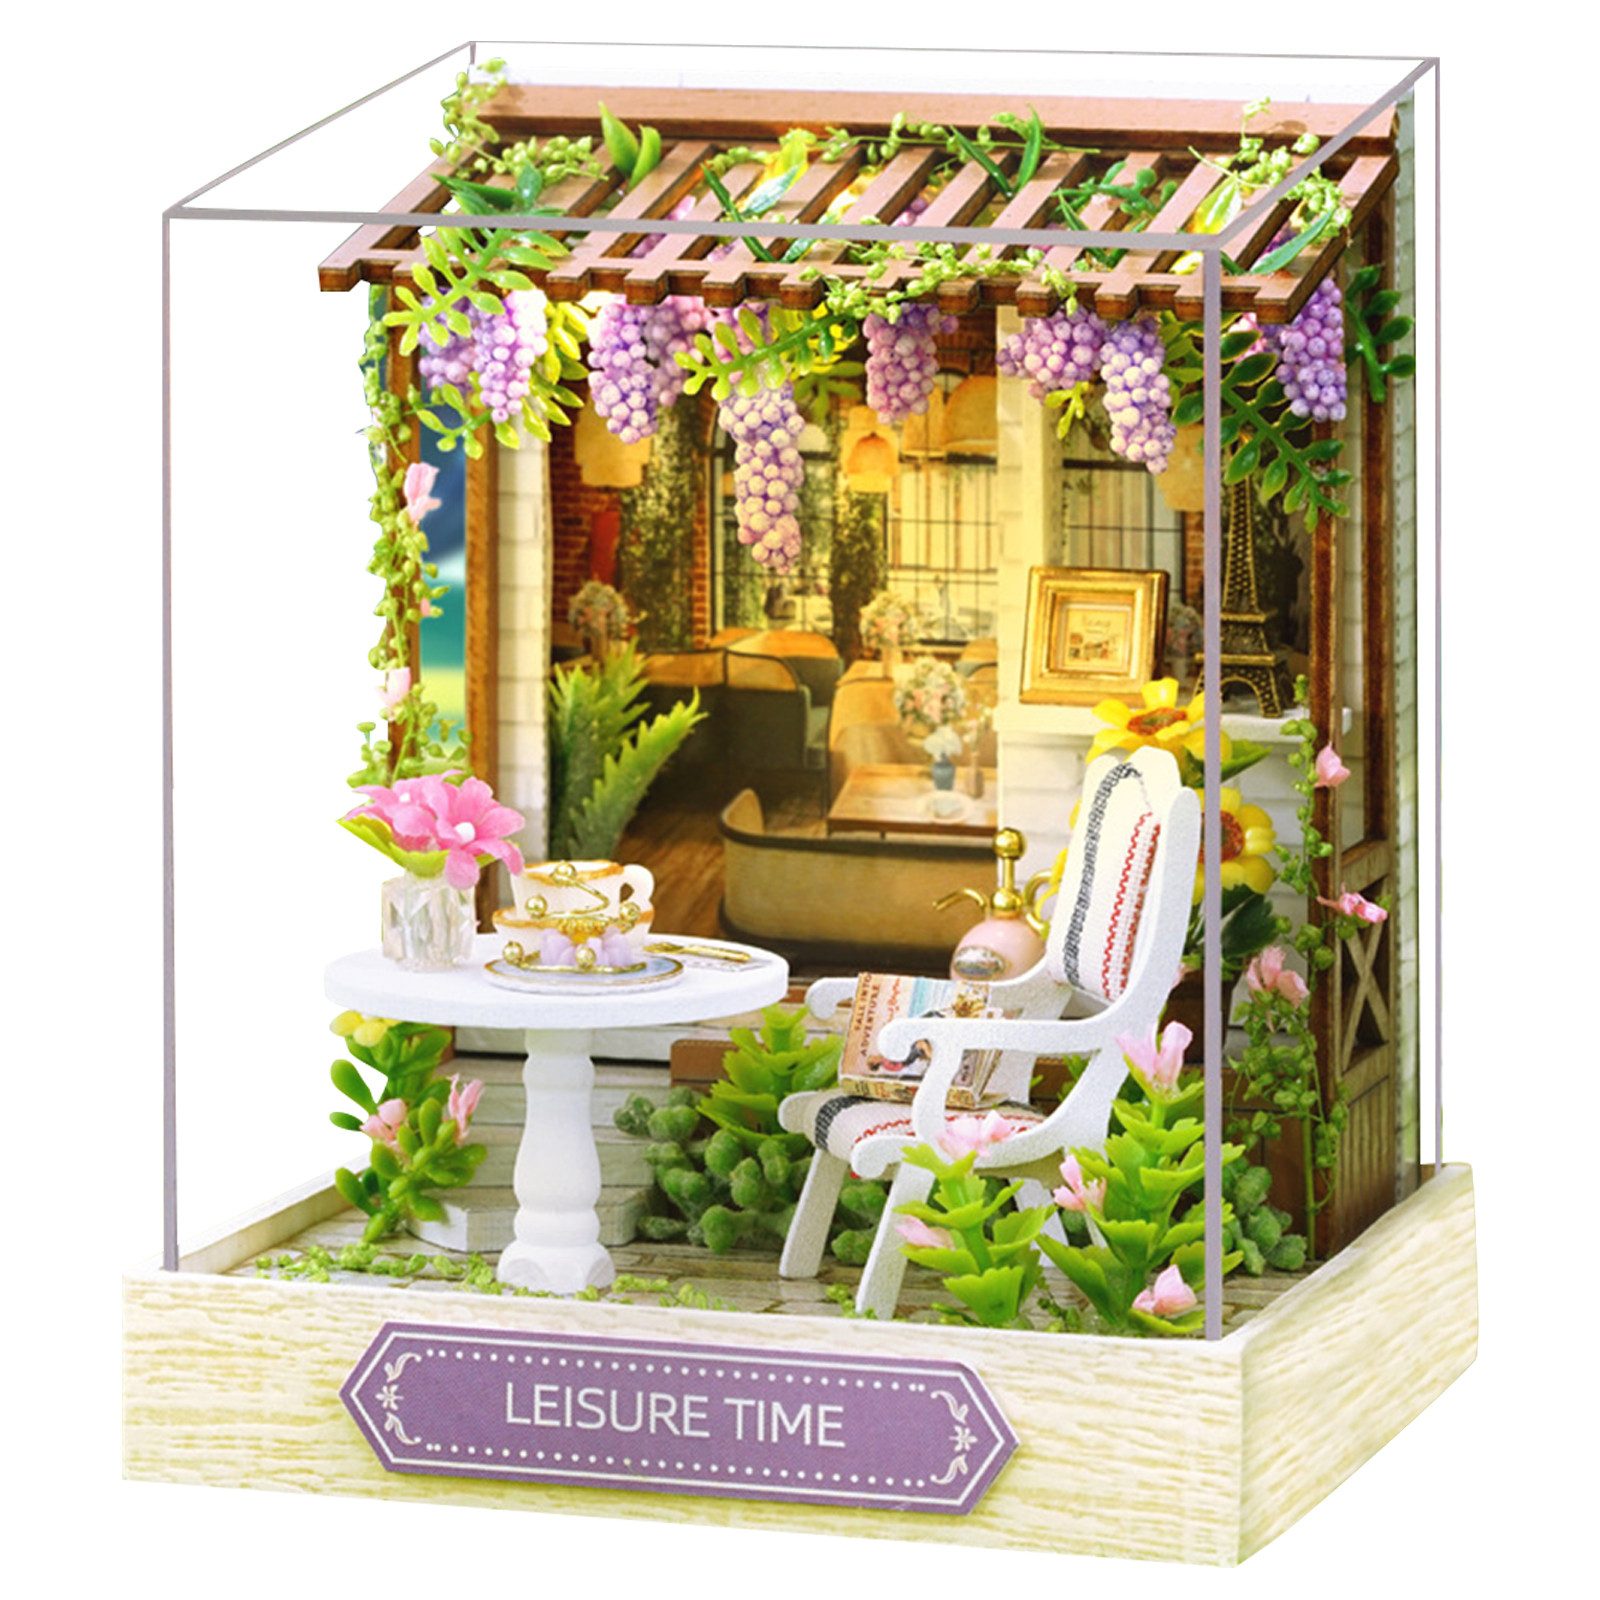 REDOM 3D-Puzzle Miniatur Haus Modellbau Bausatz Puppenhäuser Dekoration Möbeln, Puzzleteile, mit Staubabdeckung Geschenk Geburtstag Weihnachten DIY LED-Licht